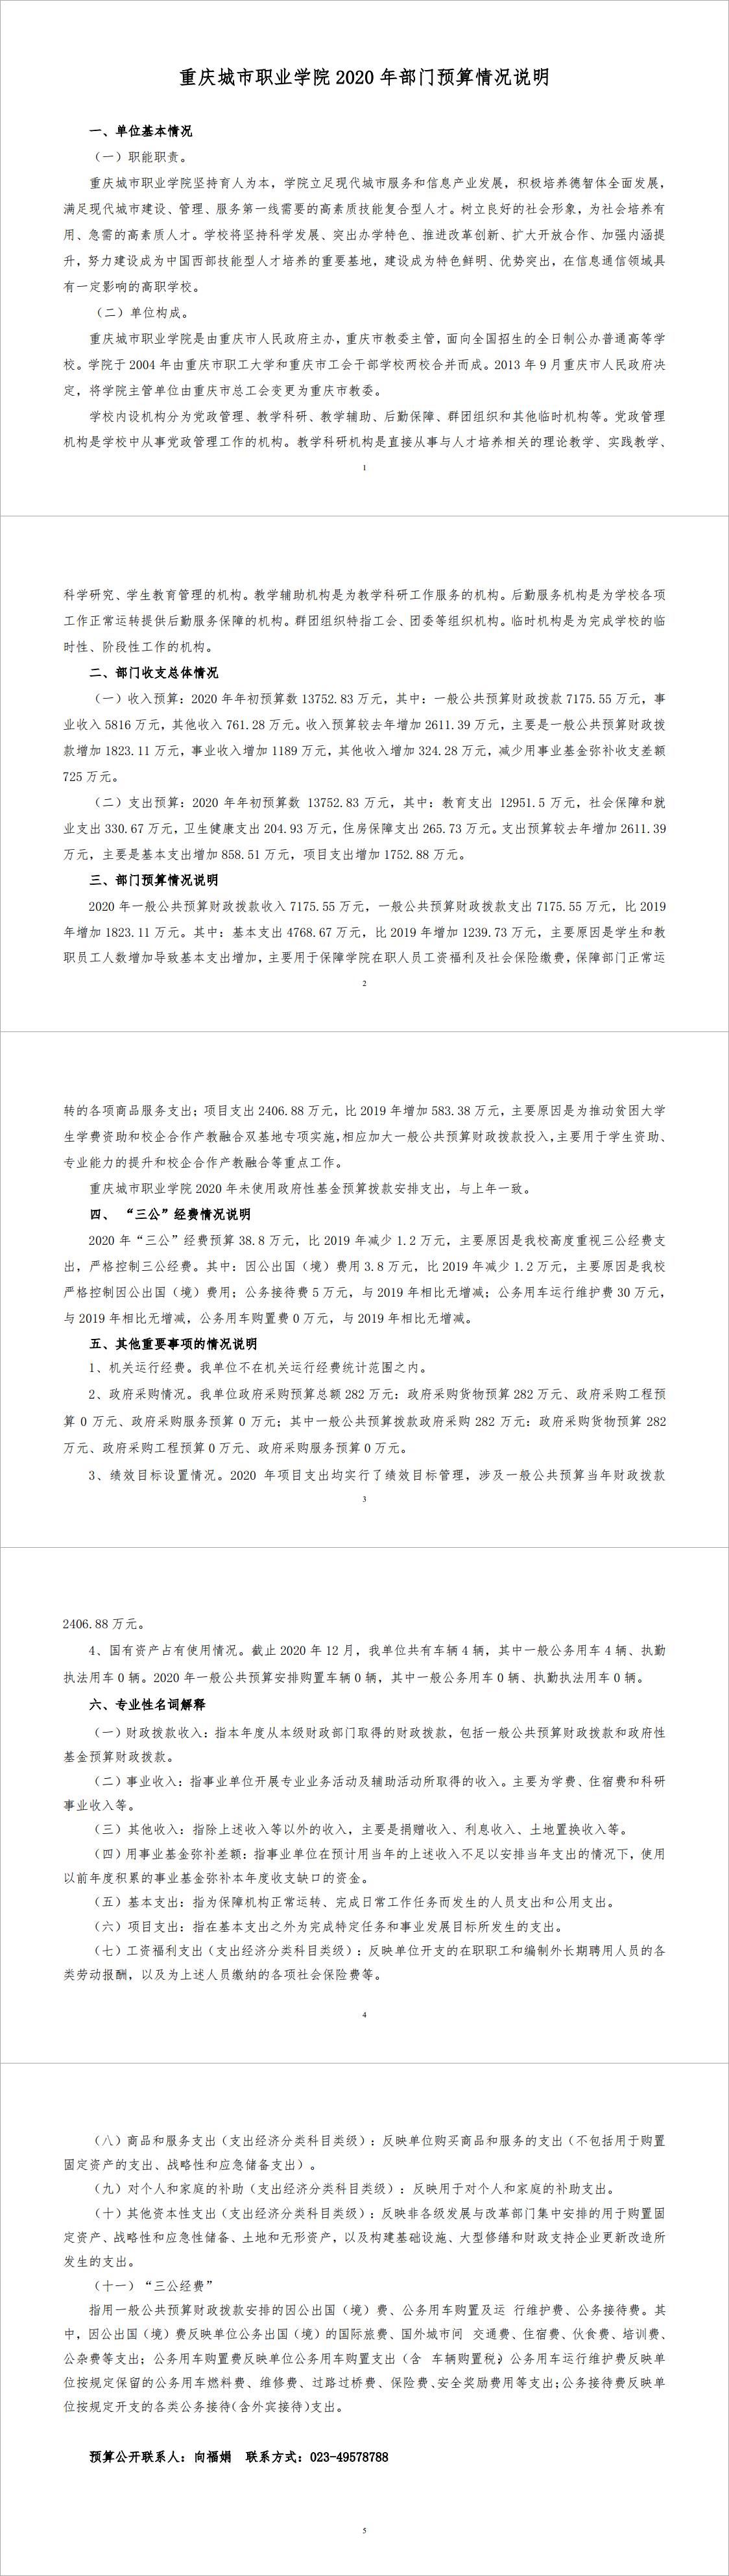 重庆城市职业学院2020年部门预算情况说明（社会公开）.jpg